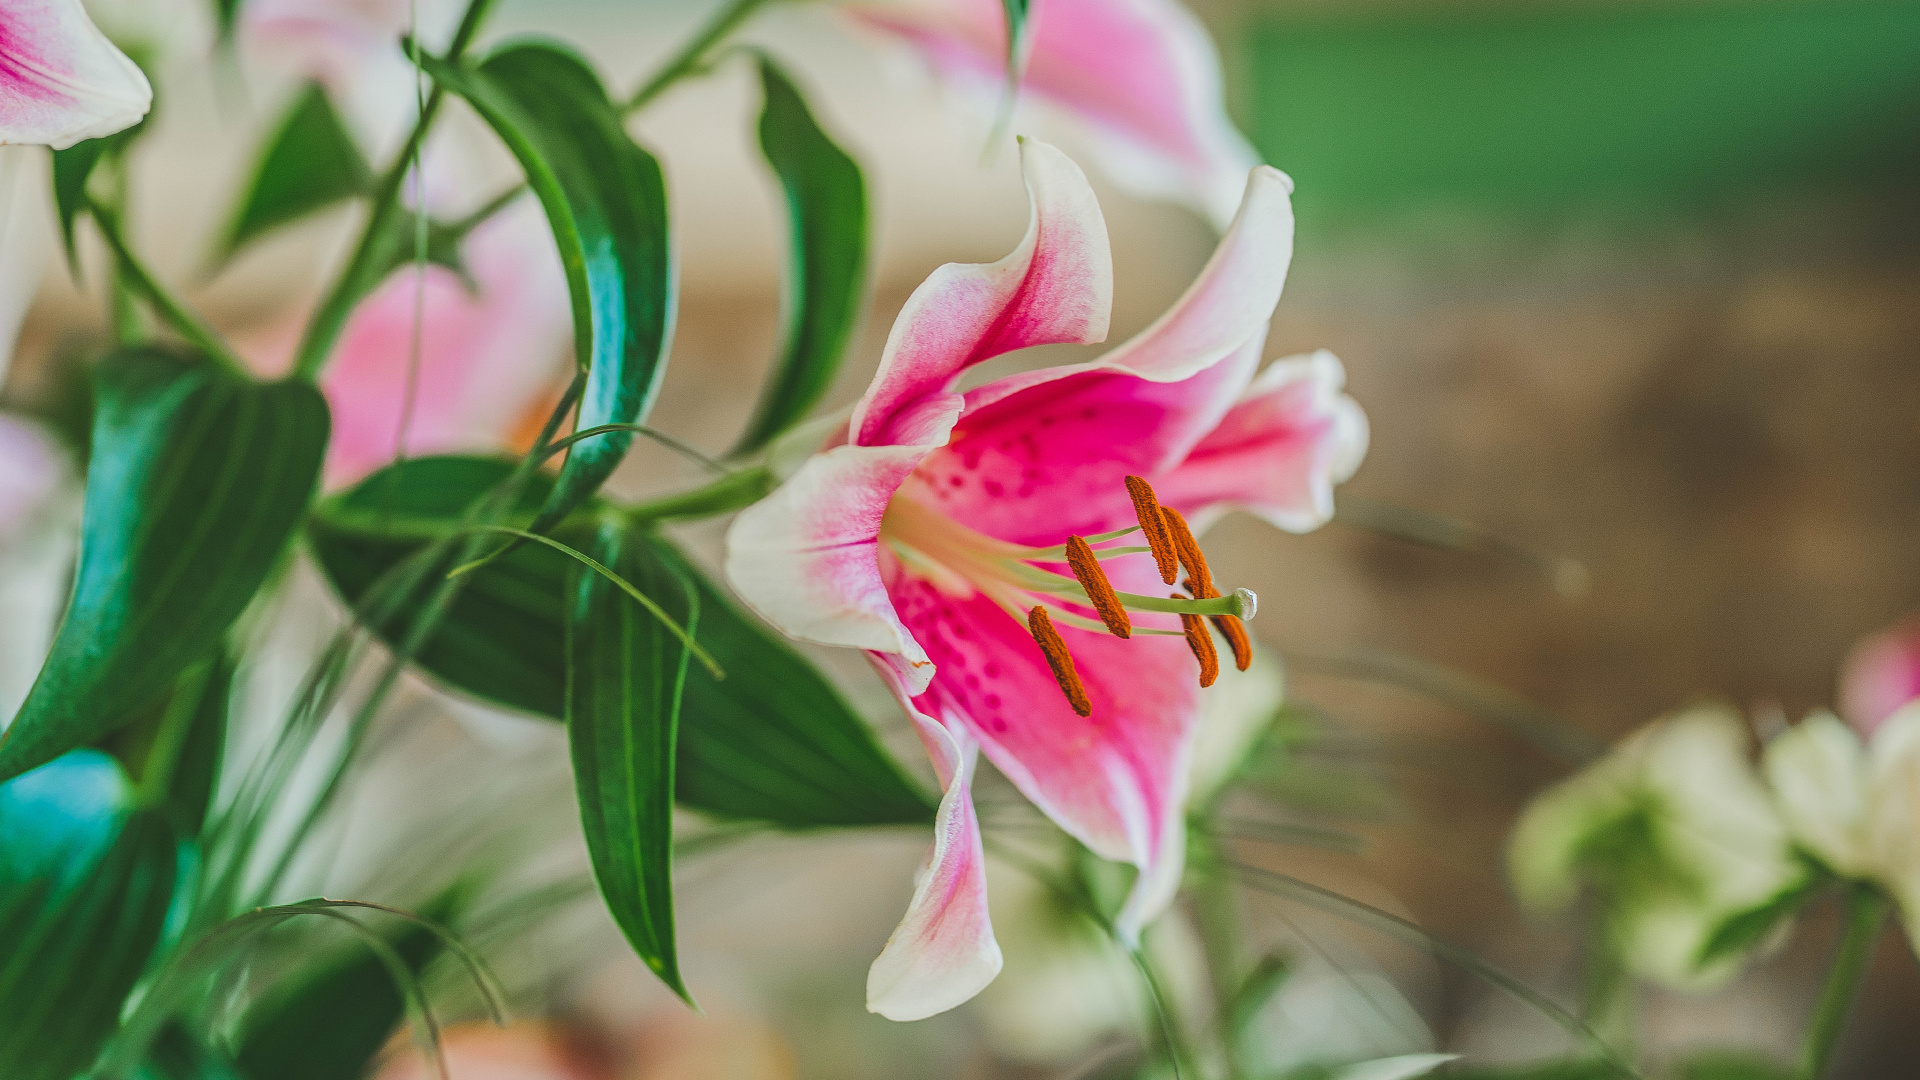 Pink and White Flower in Tilt Shift Lens. Wallpaper in 1920x1080 Resolution